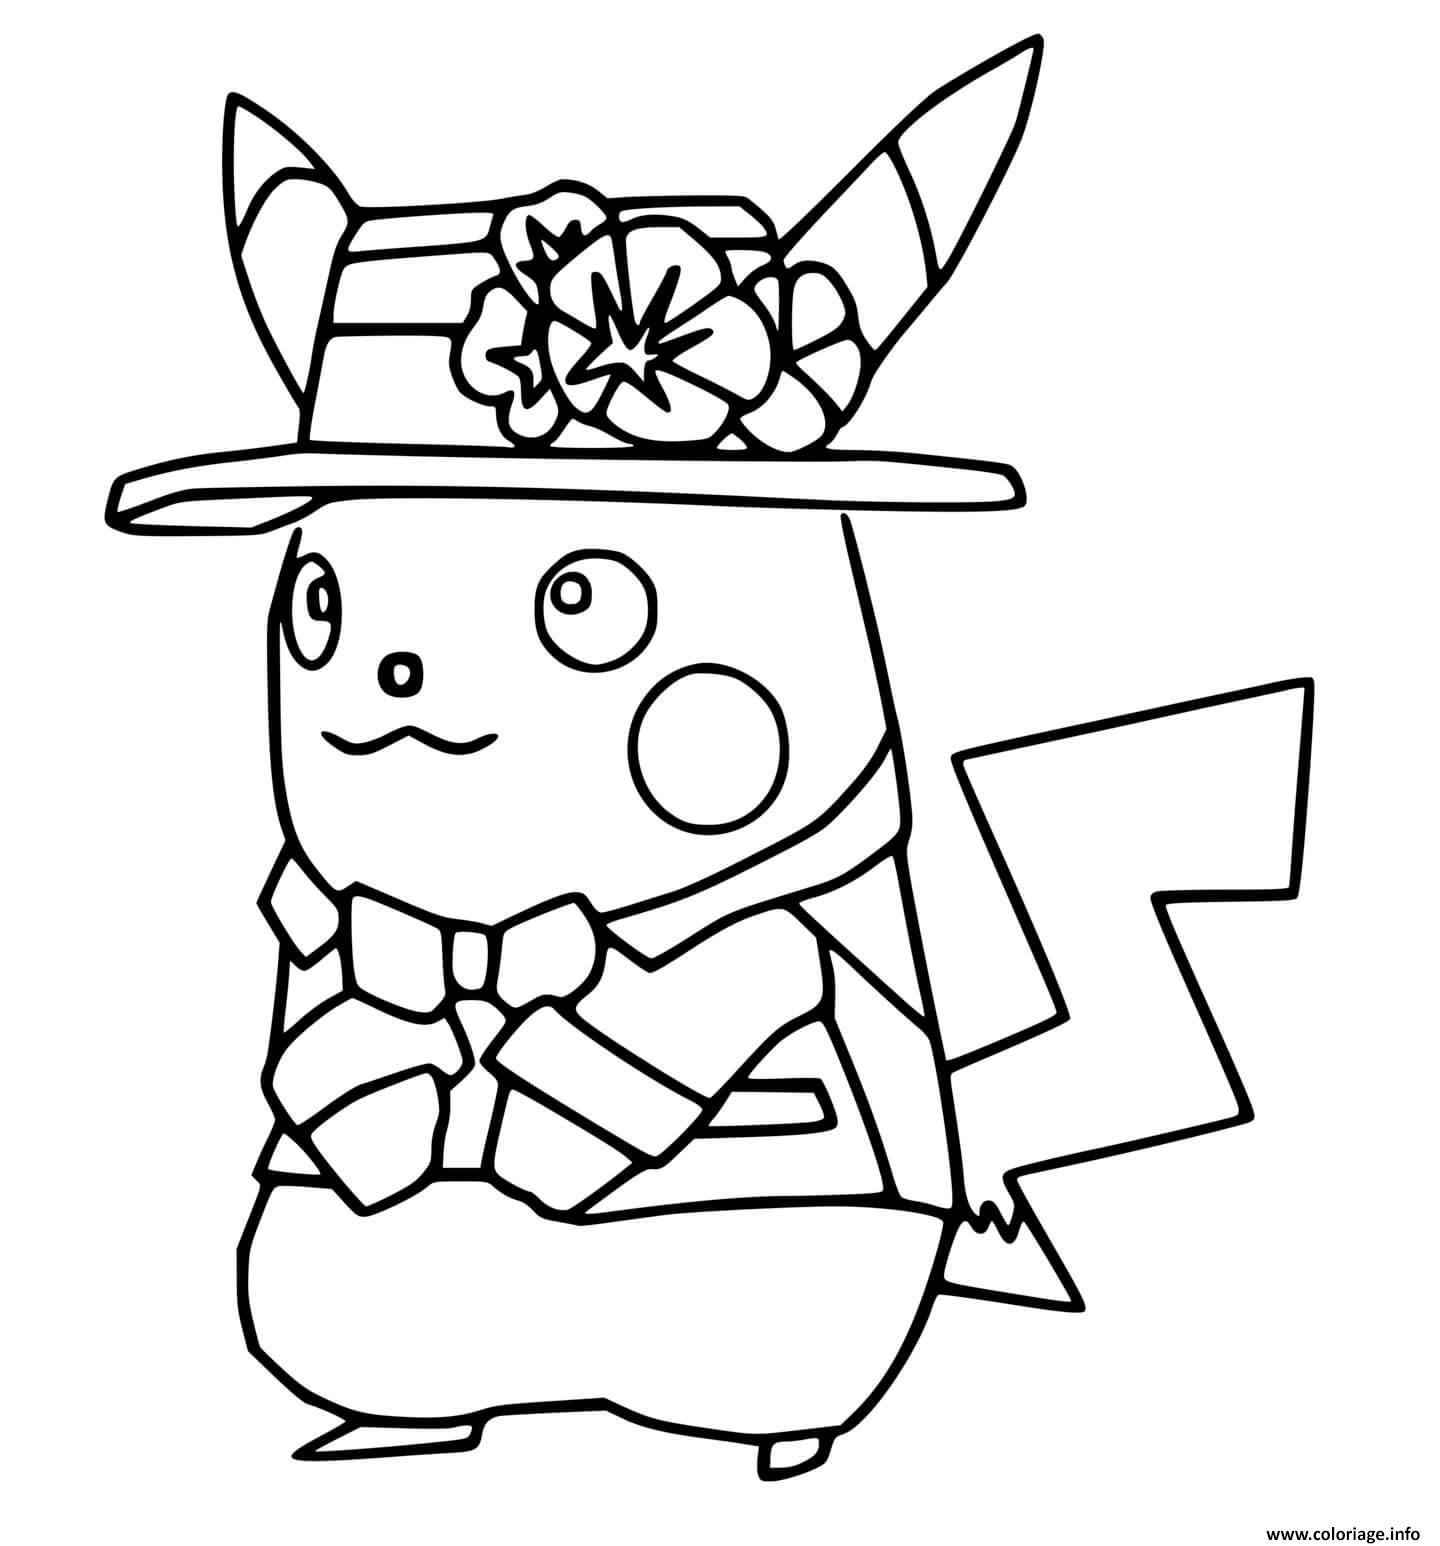 Dessin pokemon unite pikachu holo costume Coloriage Gratuit à Imprimer